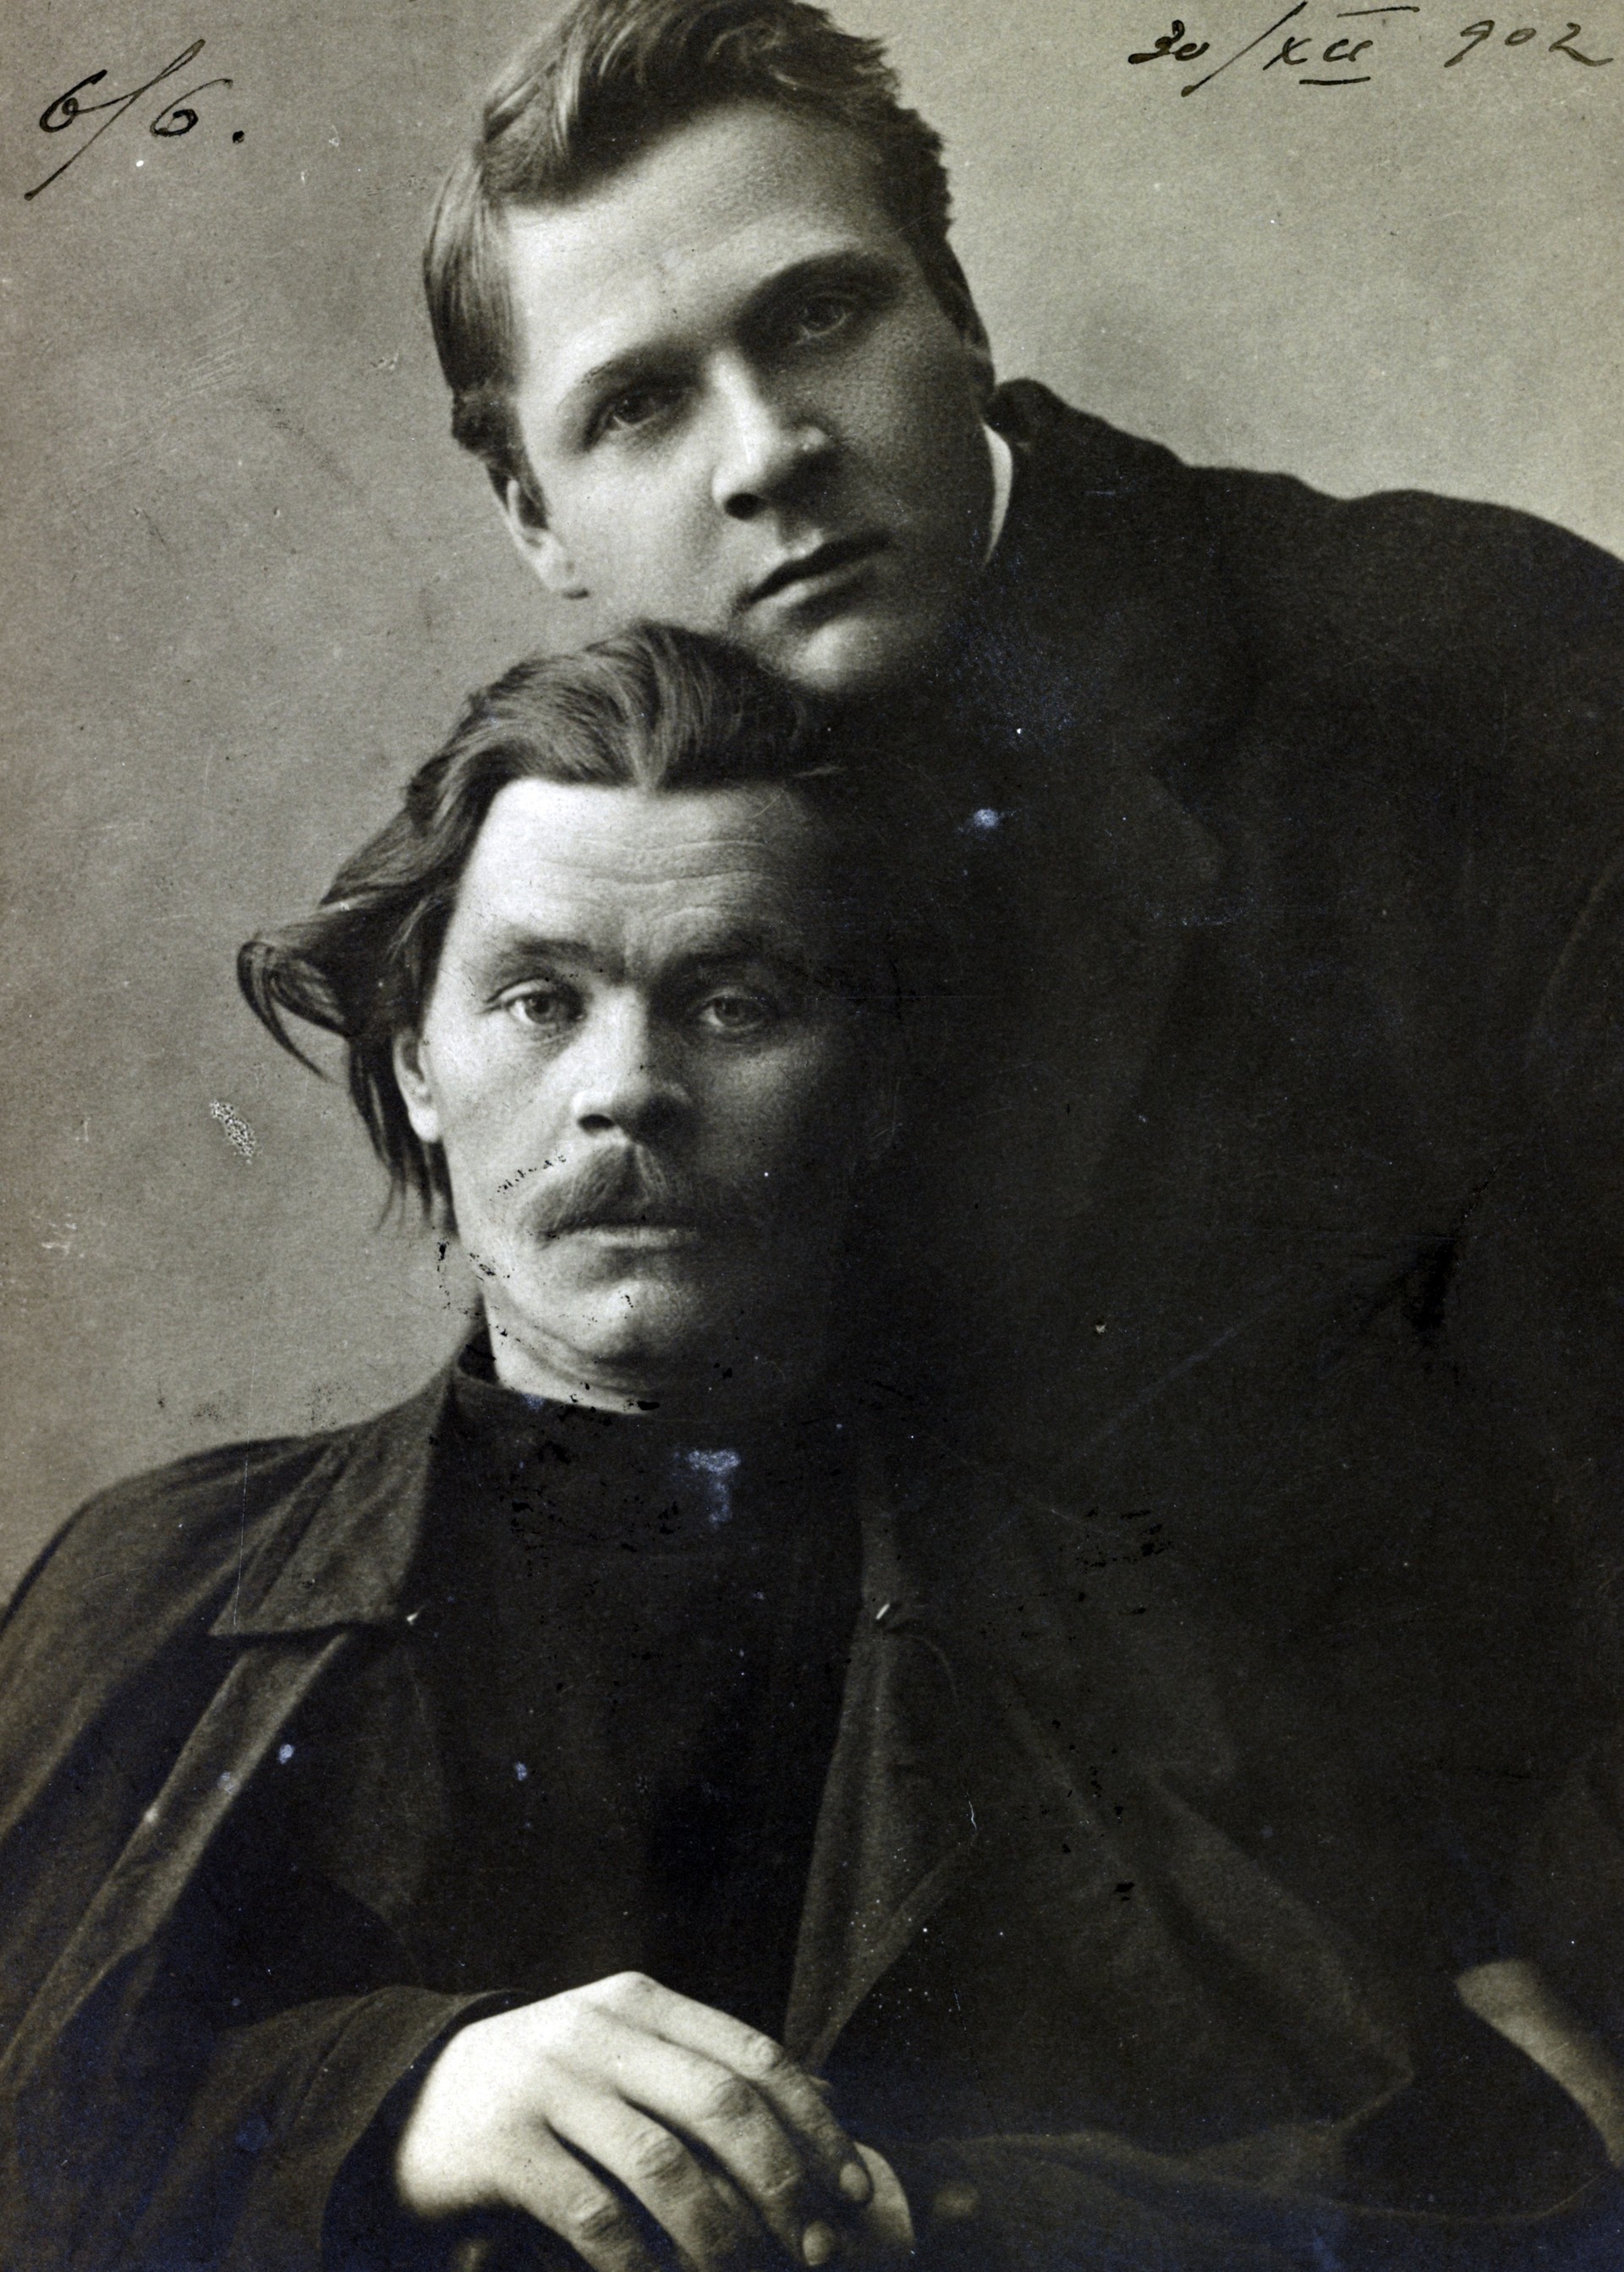 През 1920 г. Уелс се среща с Максим Горки и певеца Фьодор Шаляпин